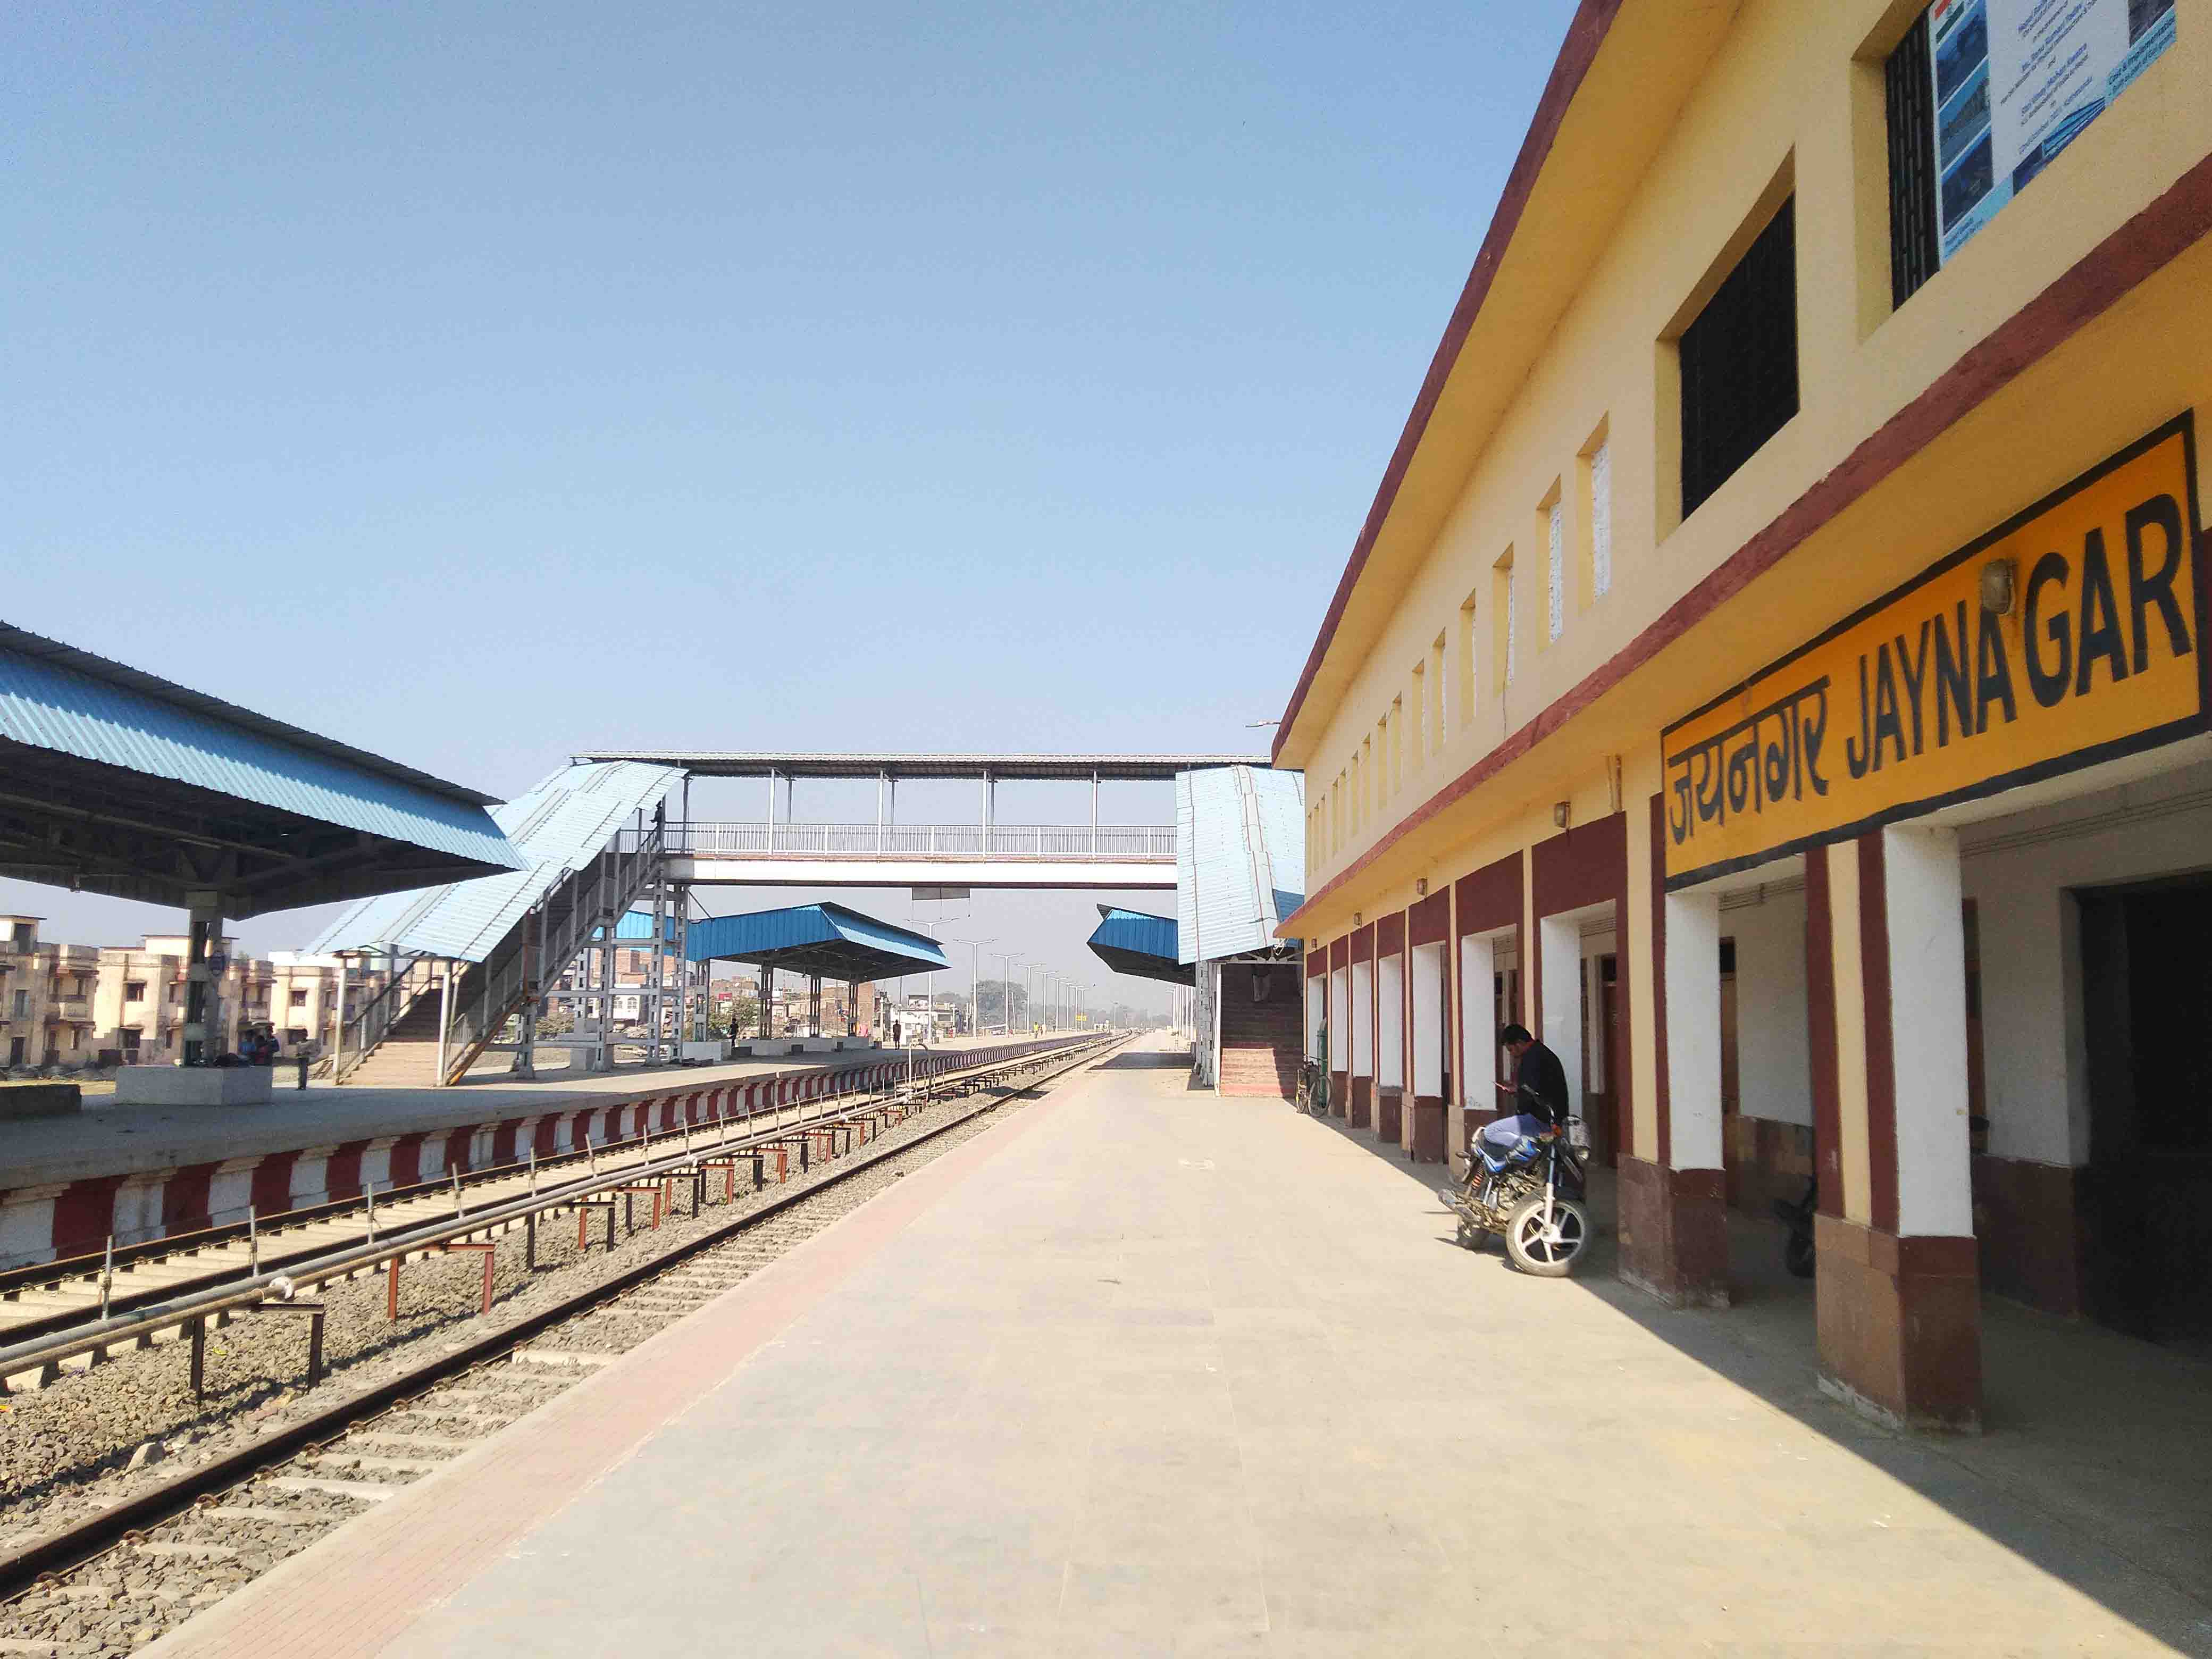 Jaynagar Station